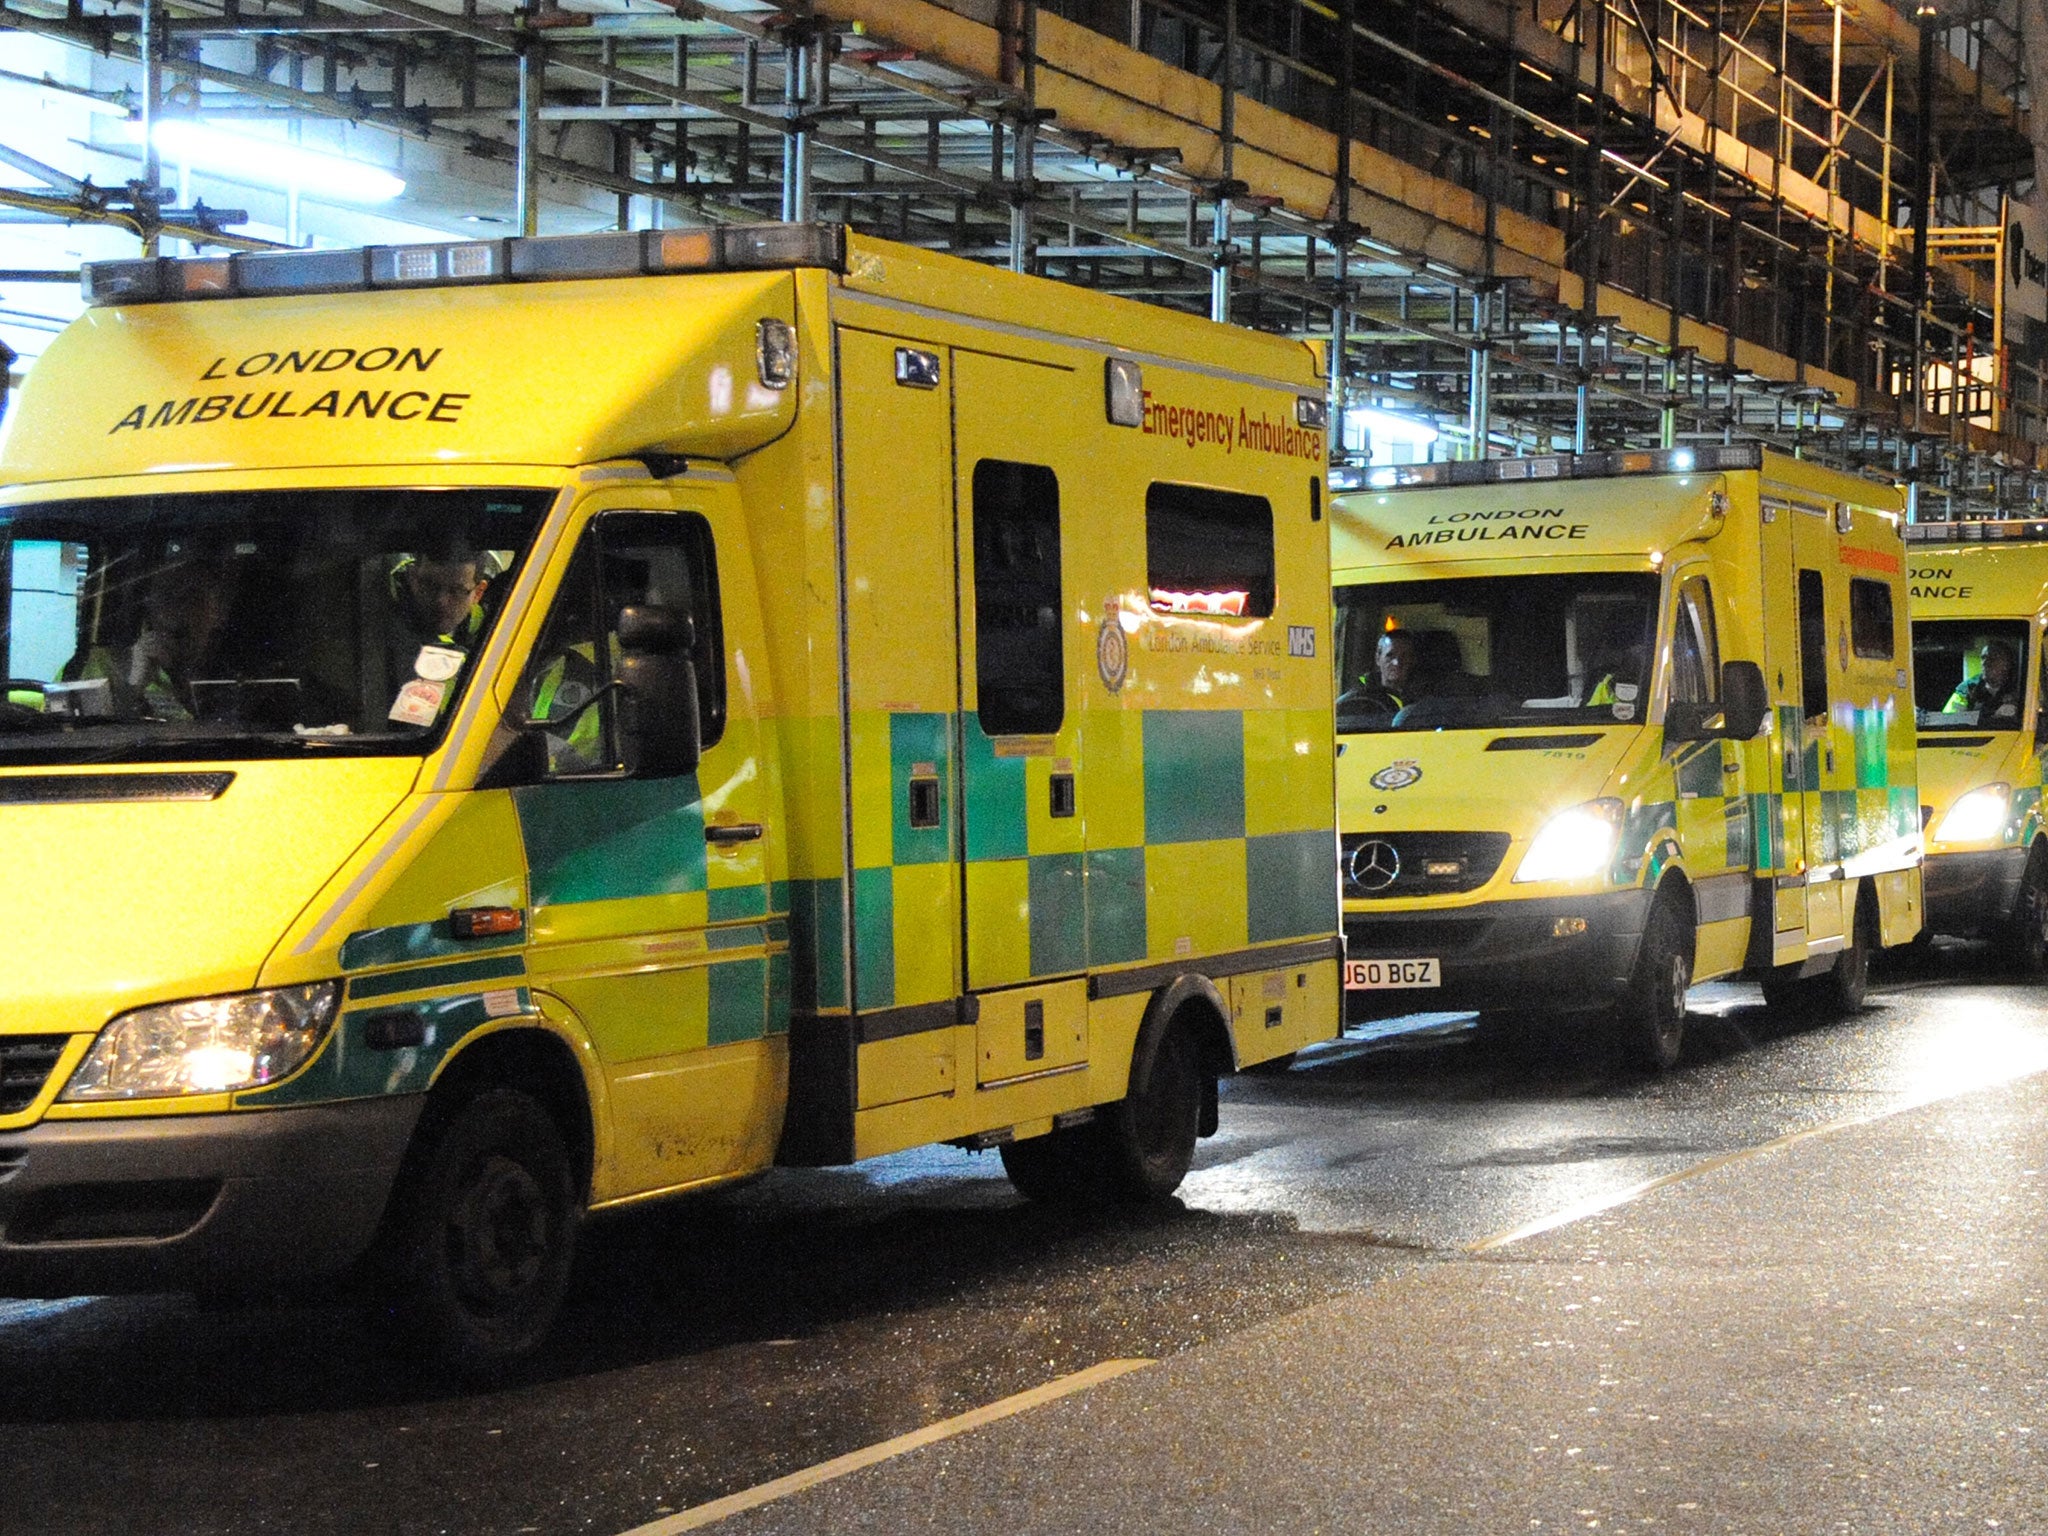 General complaints about patient transport including ambulances were up by 43 per cent